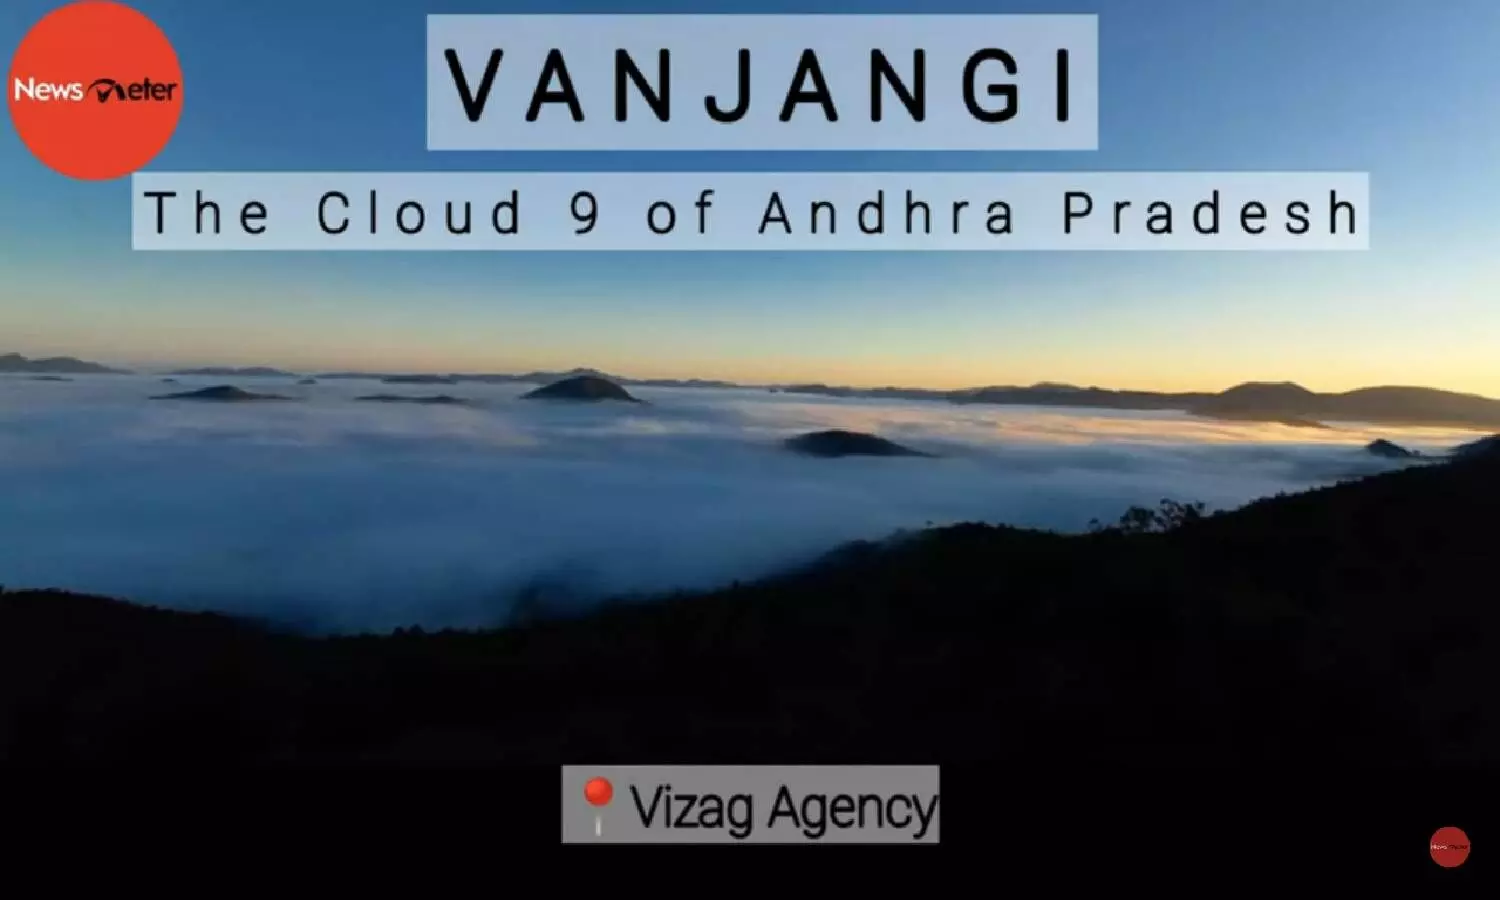 Vanjangi, the Cloud 9 of Andhra Pradesh